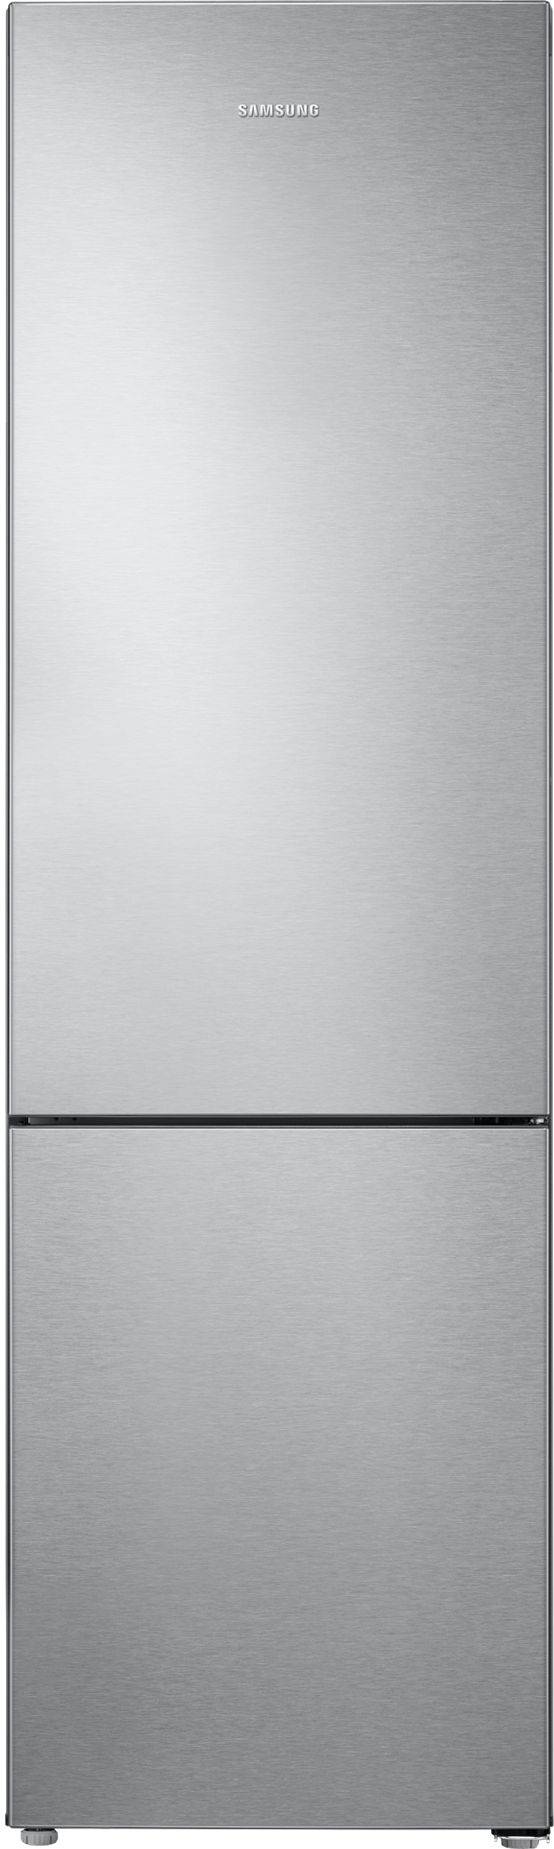 Холодильник двухкамерный Samsung RB37A5001SA/WT